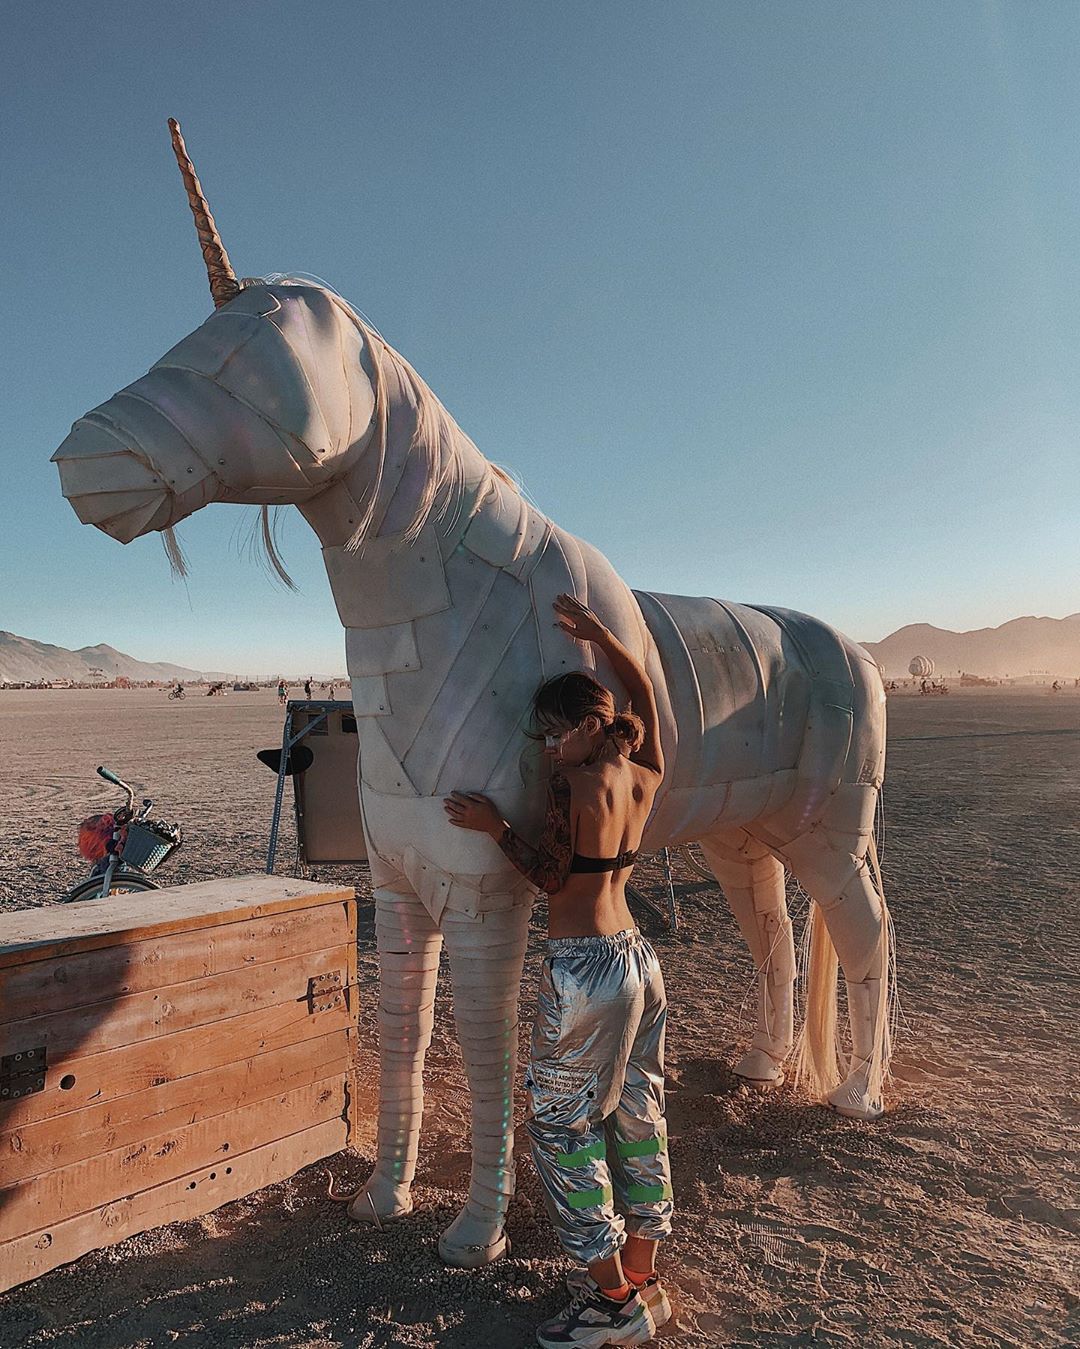 Burning Man 2019 6 festival ocio musica futurismo estilo de vida viajar veano